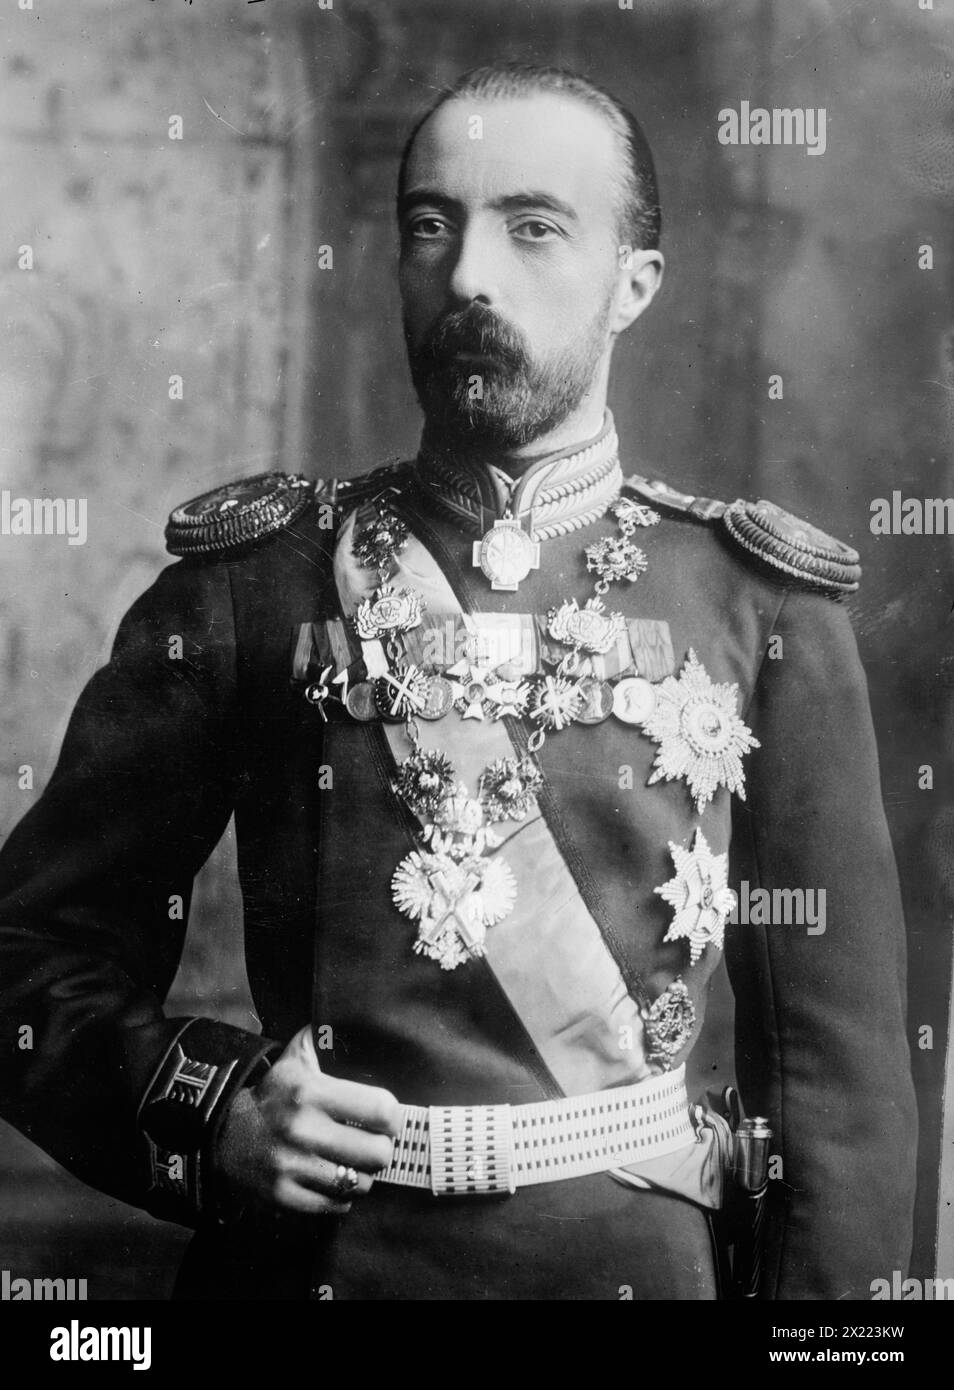 Grand Duke Michael of Russia in uniform, 1910. Stock Photo